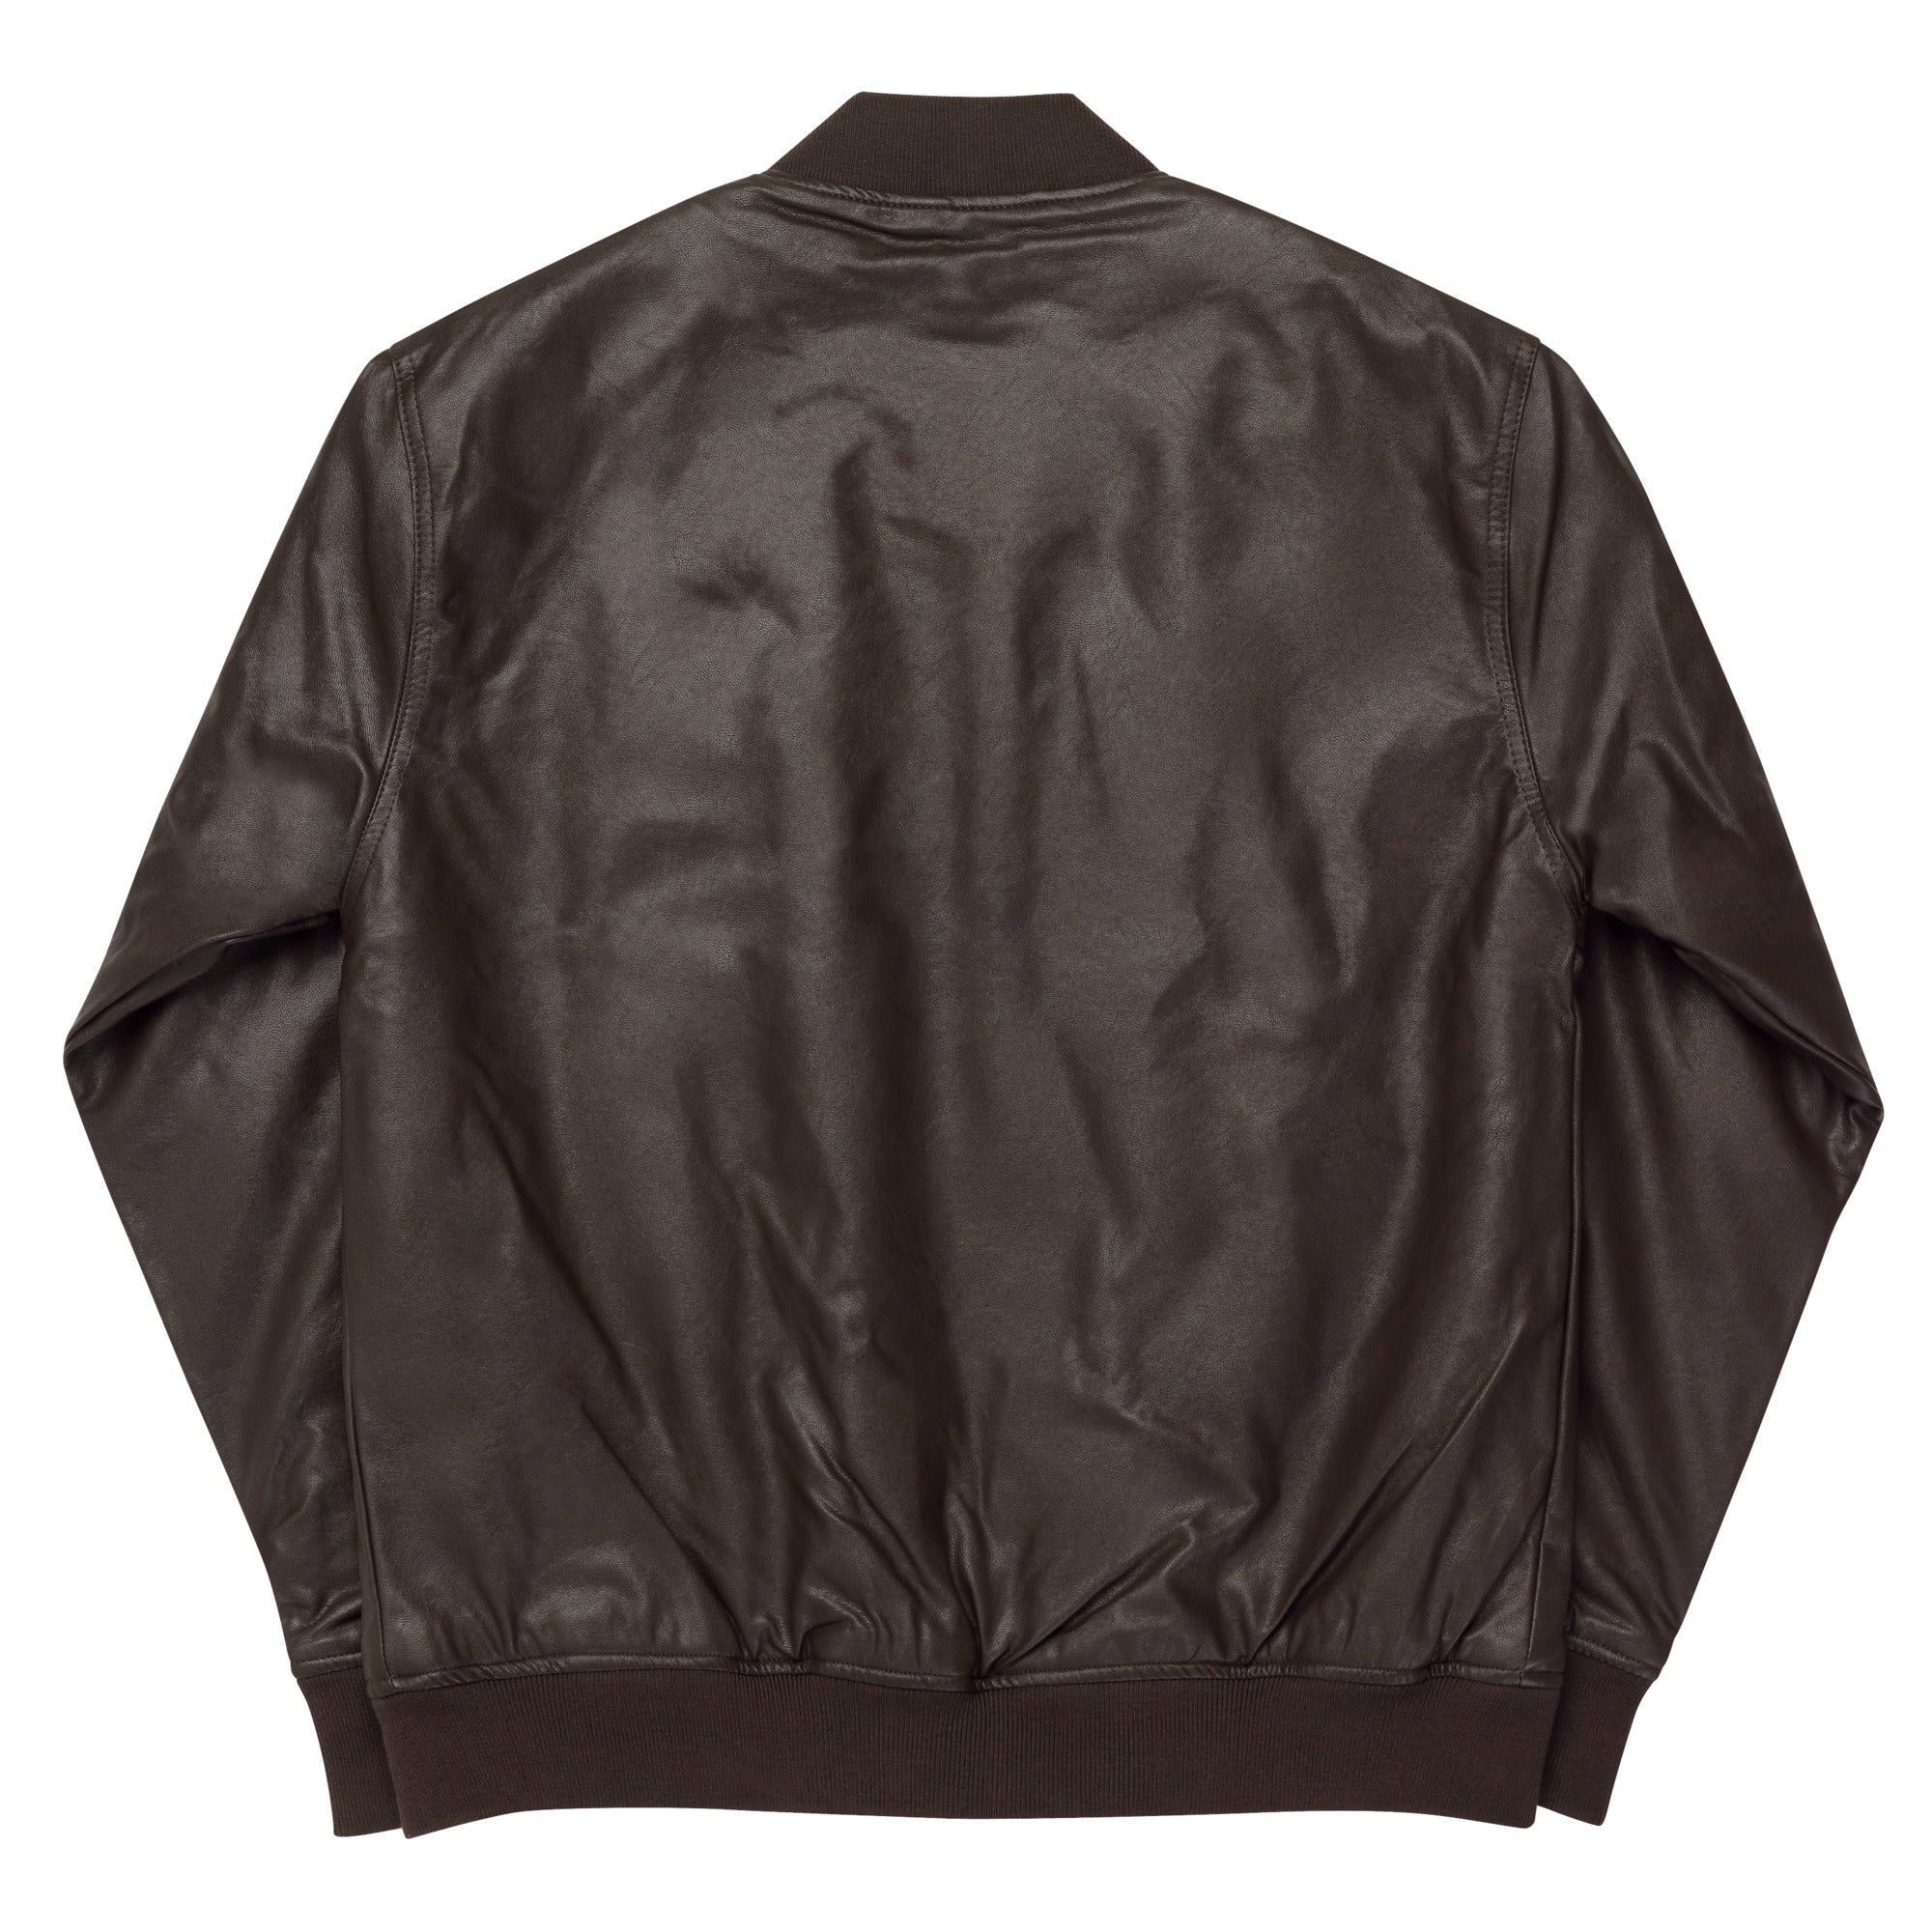 GTSC Leather Bomber Jacket